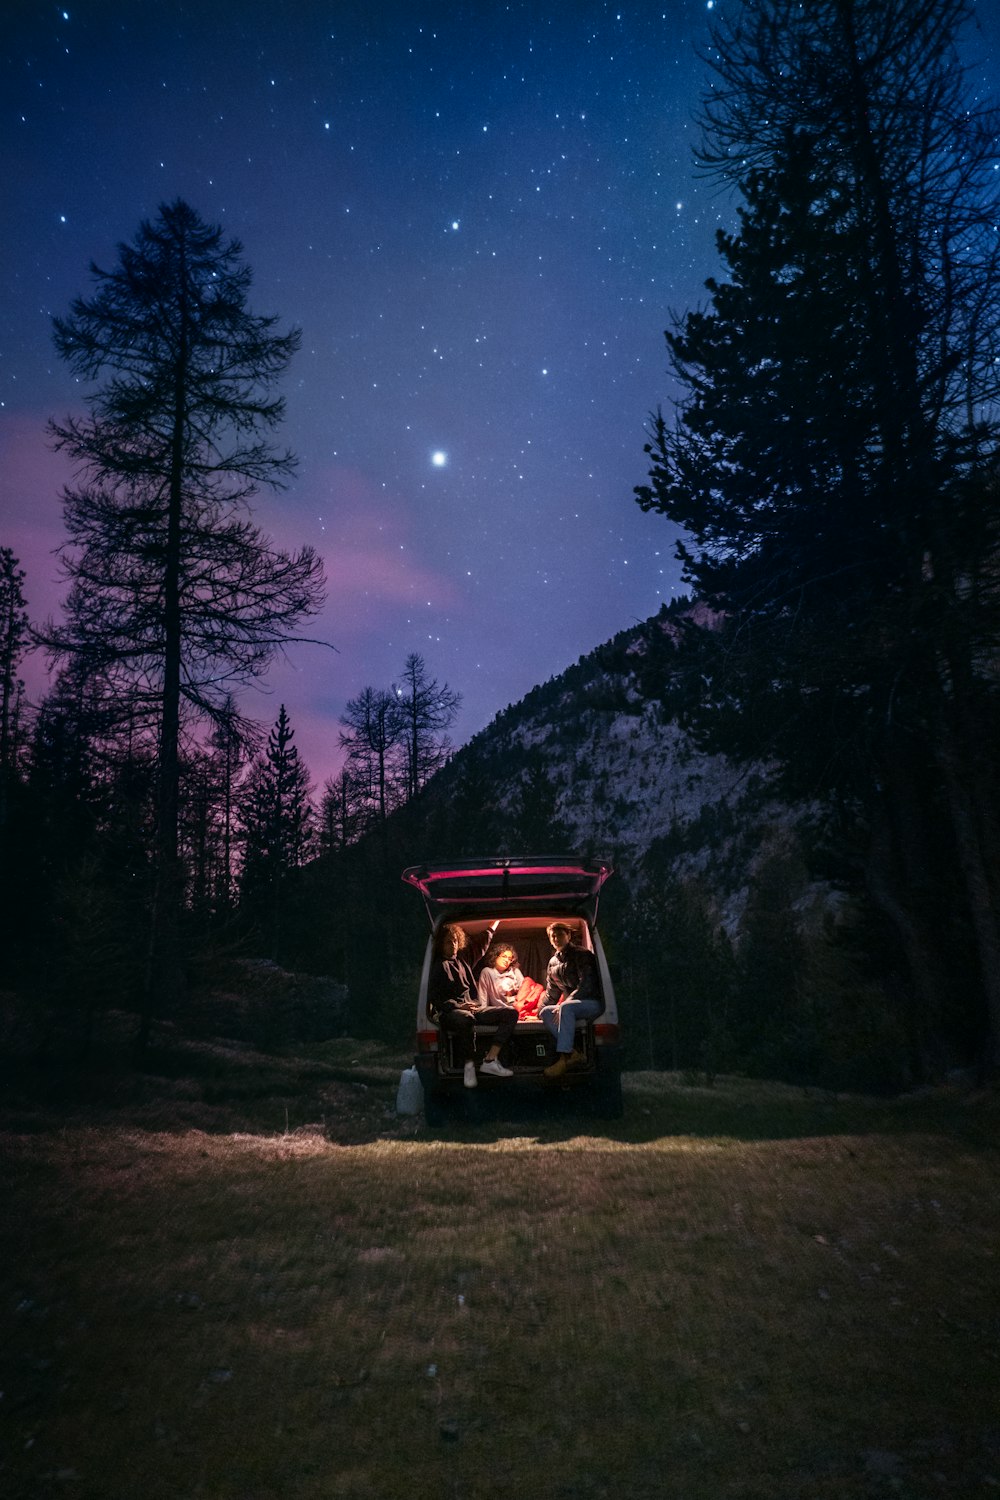 un groupe de personnes assises dans une voiturette de golf sous un ciel nocturne